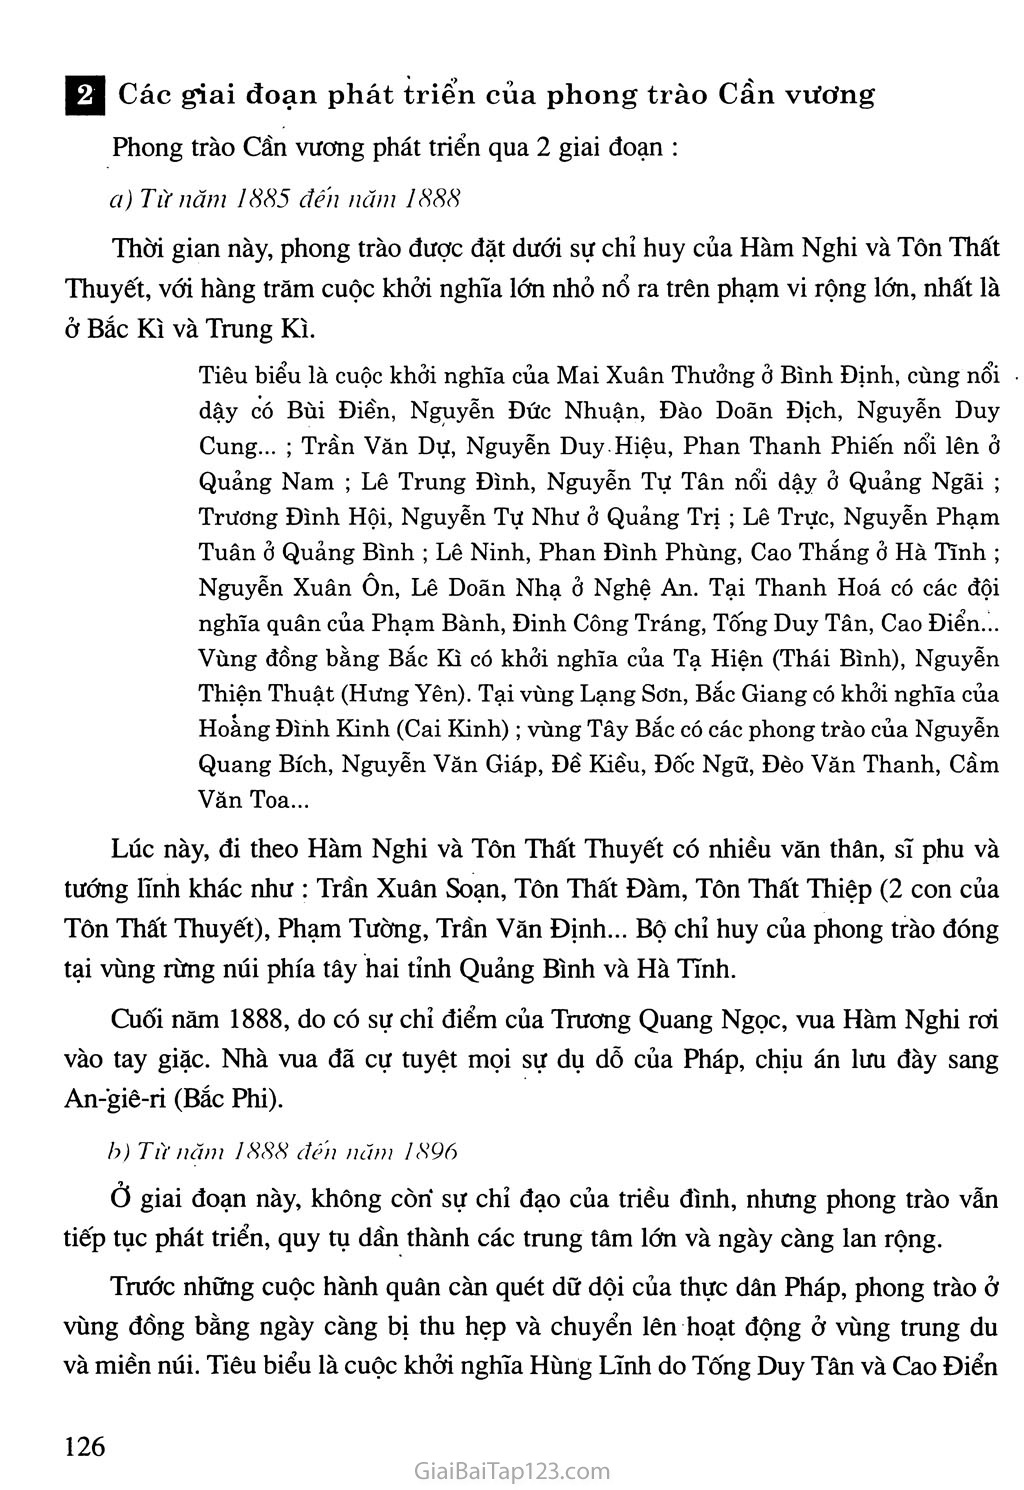 Bài 21. Phong trào yêu nước chống Pháp của nhân dân Việt Nam trong những năm cuối thế kỉ XIX trang 3